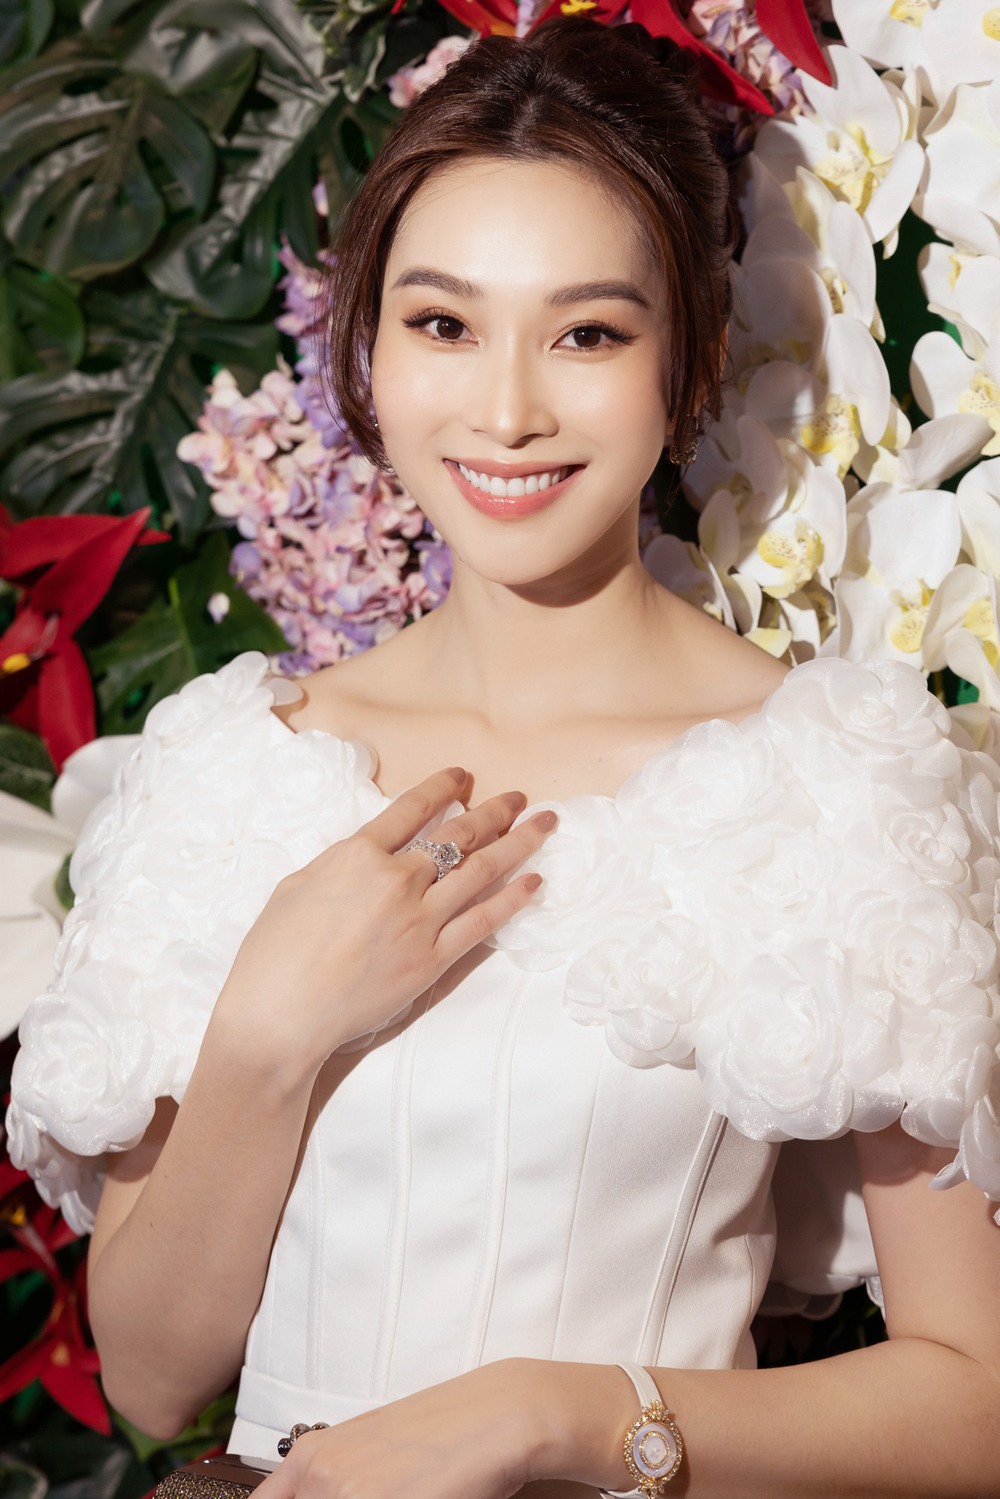 Top 5 Hoa hậu Việt Nam 2012: Đặng Thu Thảo xuất hiện là gây sốt, 1 người chuyển hướng làm ca sĩ - Ảnh 2.